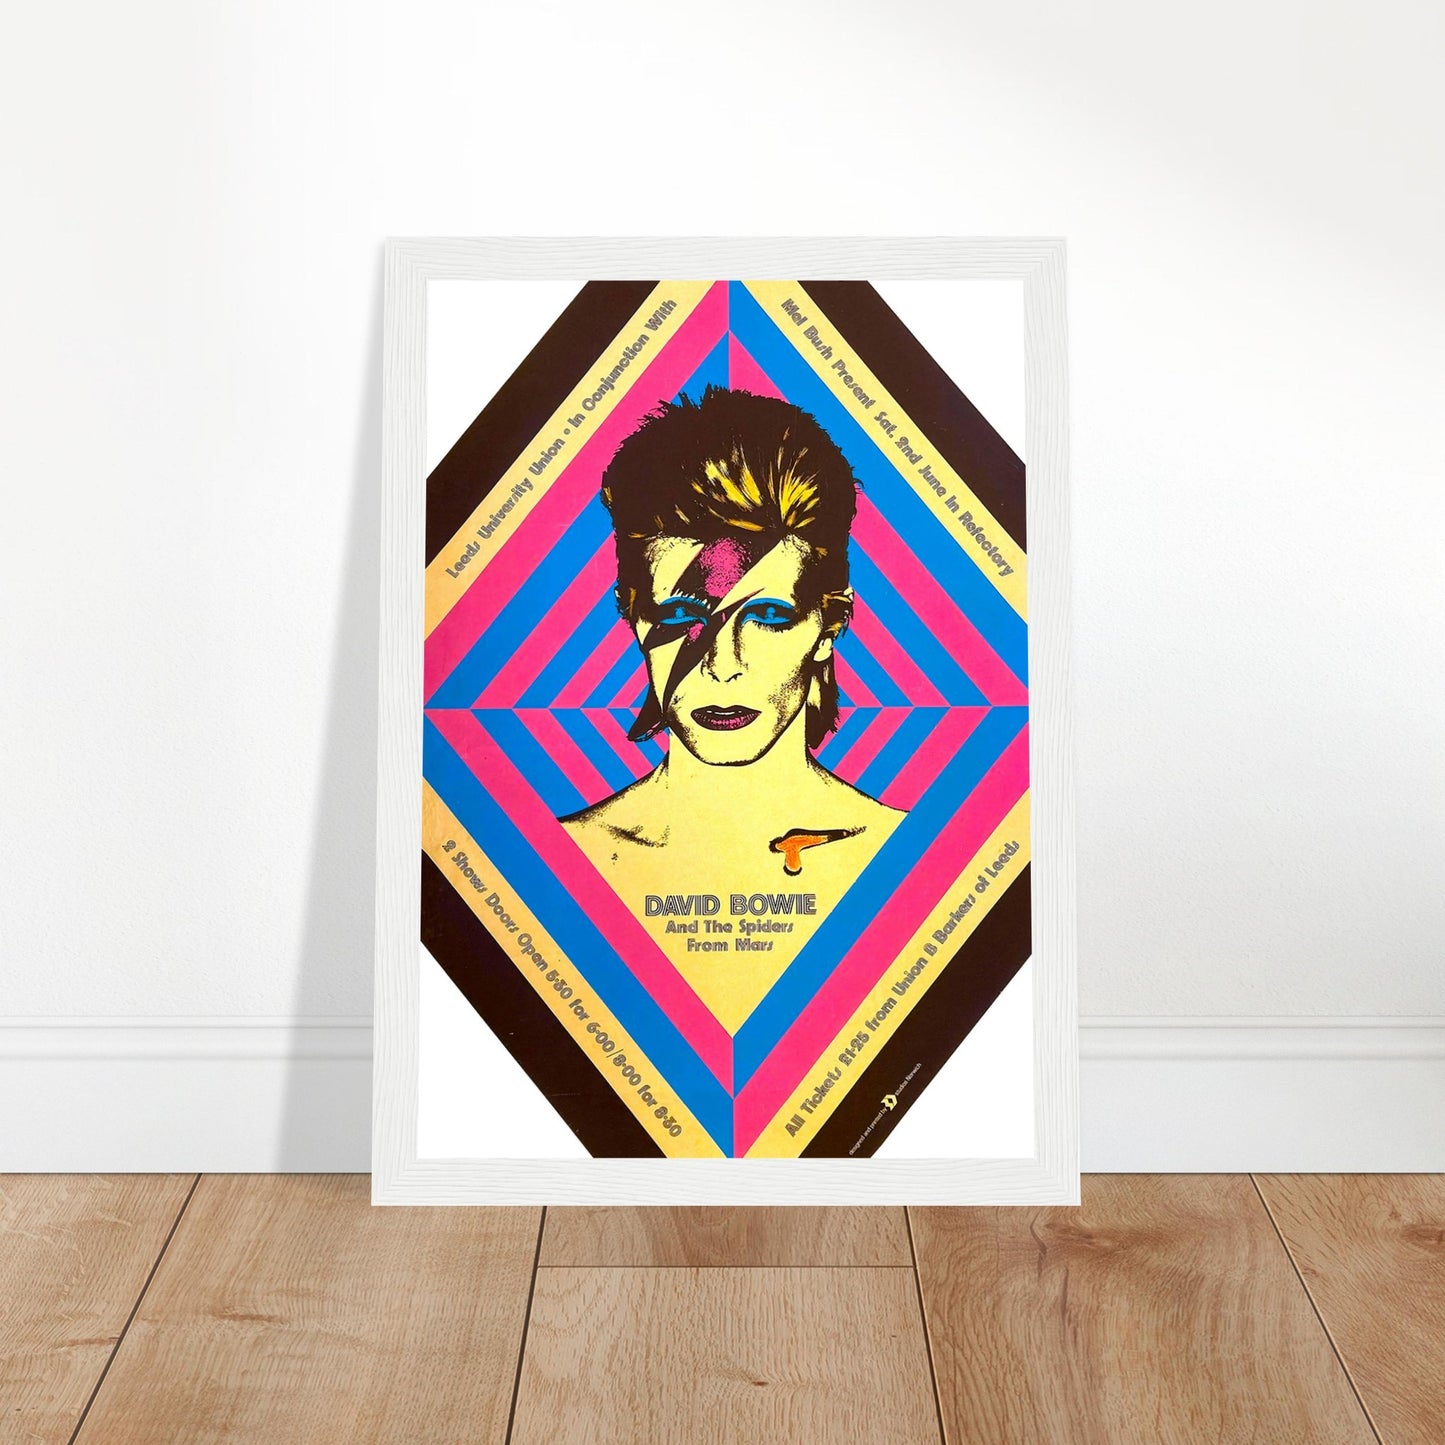 David Bowie Vintage Poster Reprint on Premium Matte Paper - Posterify